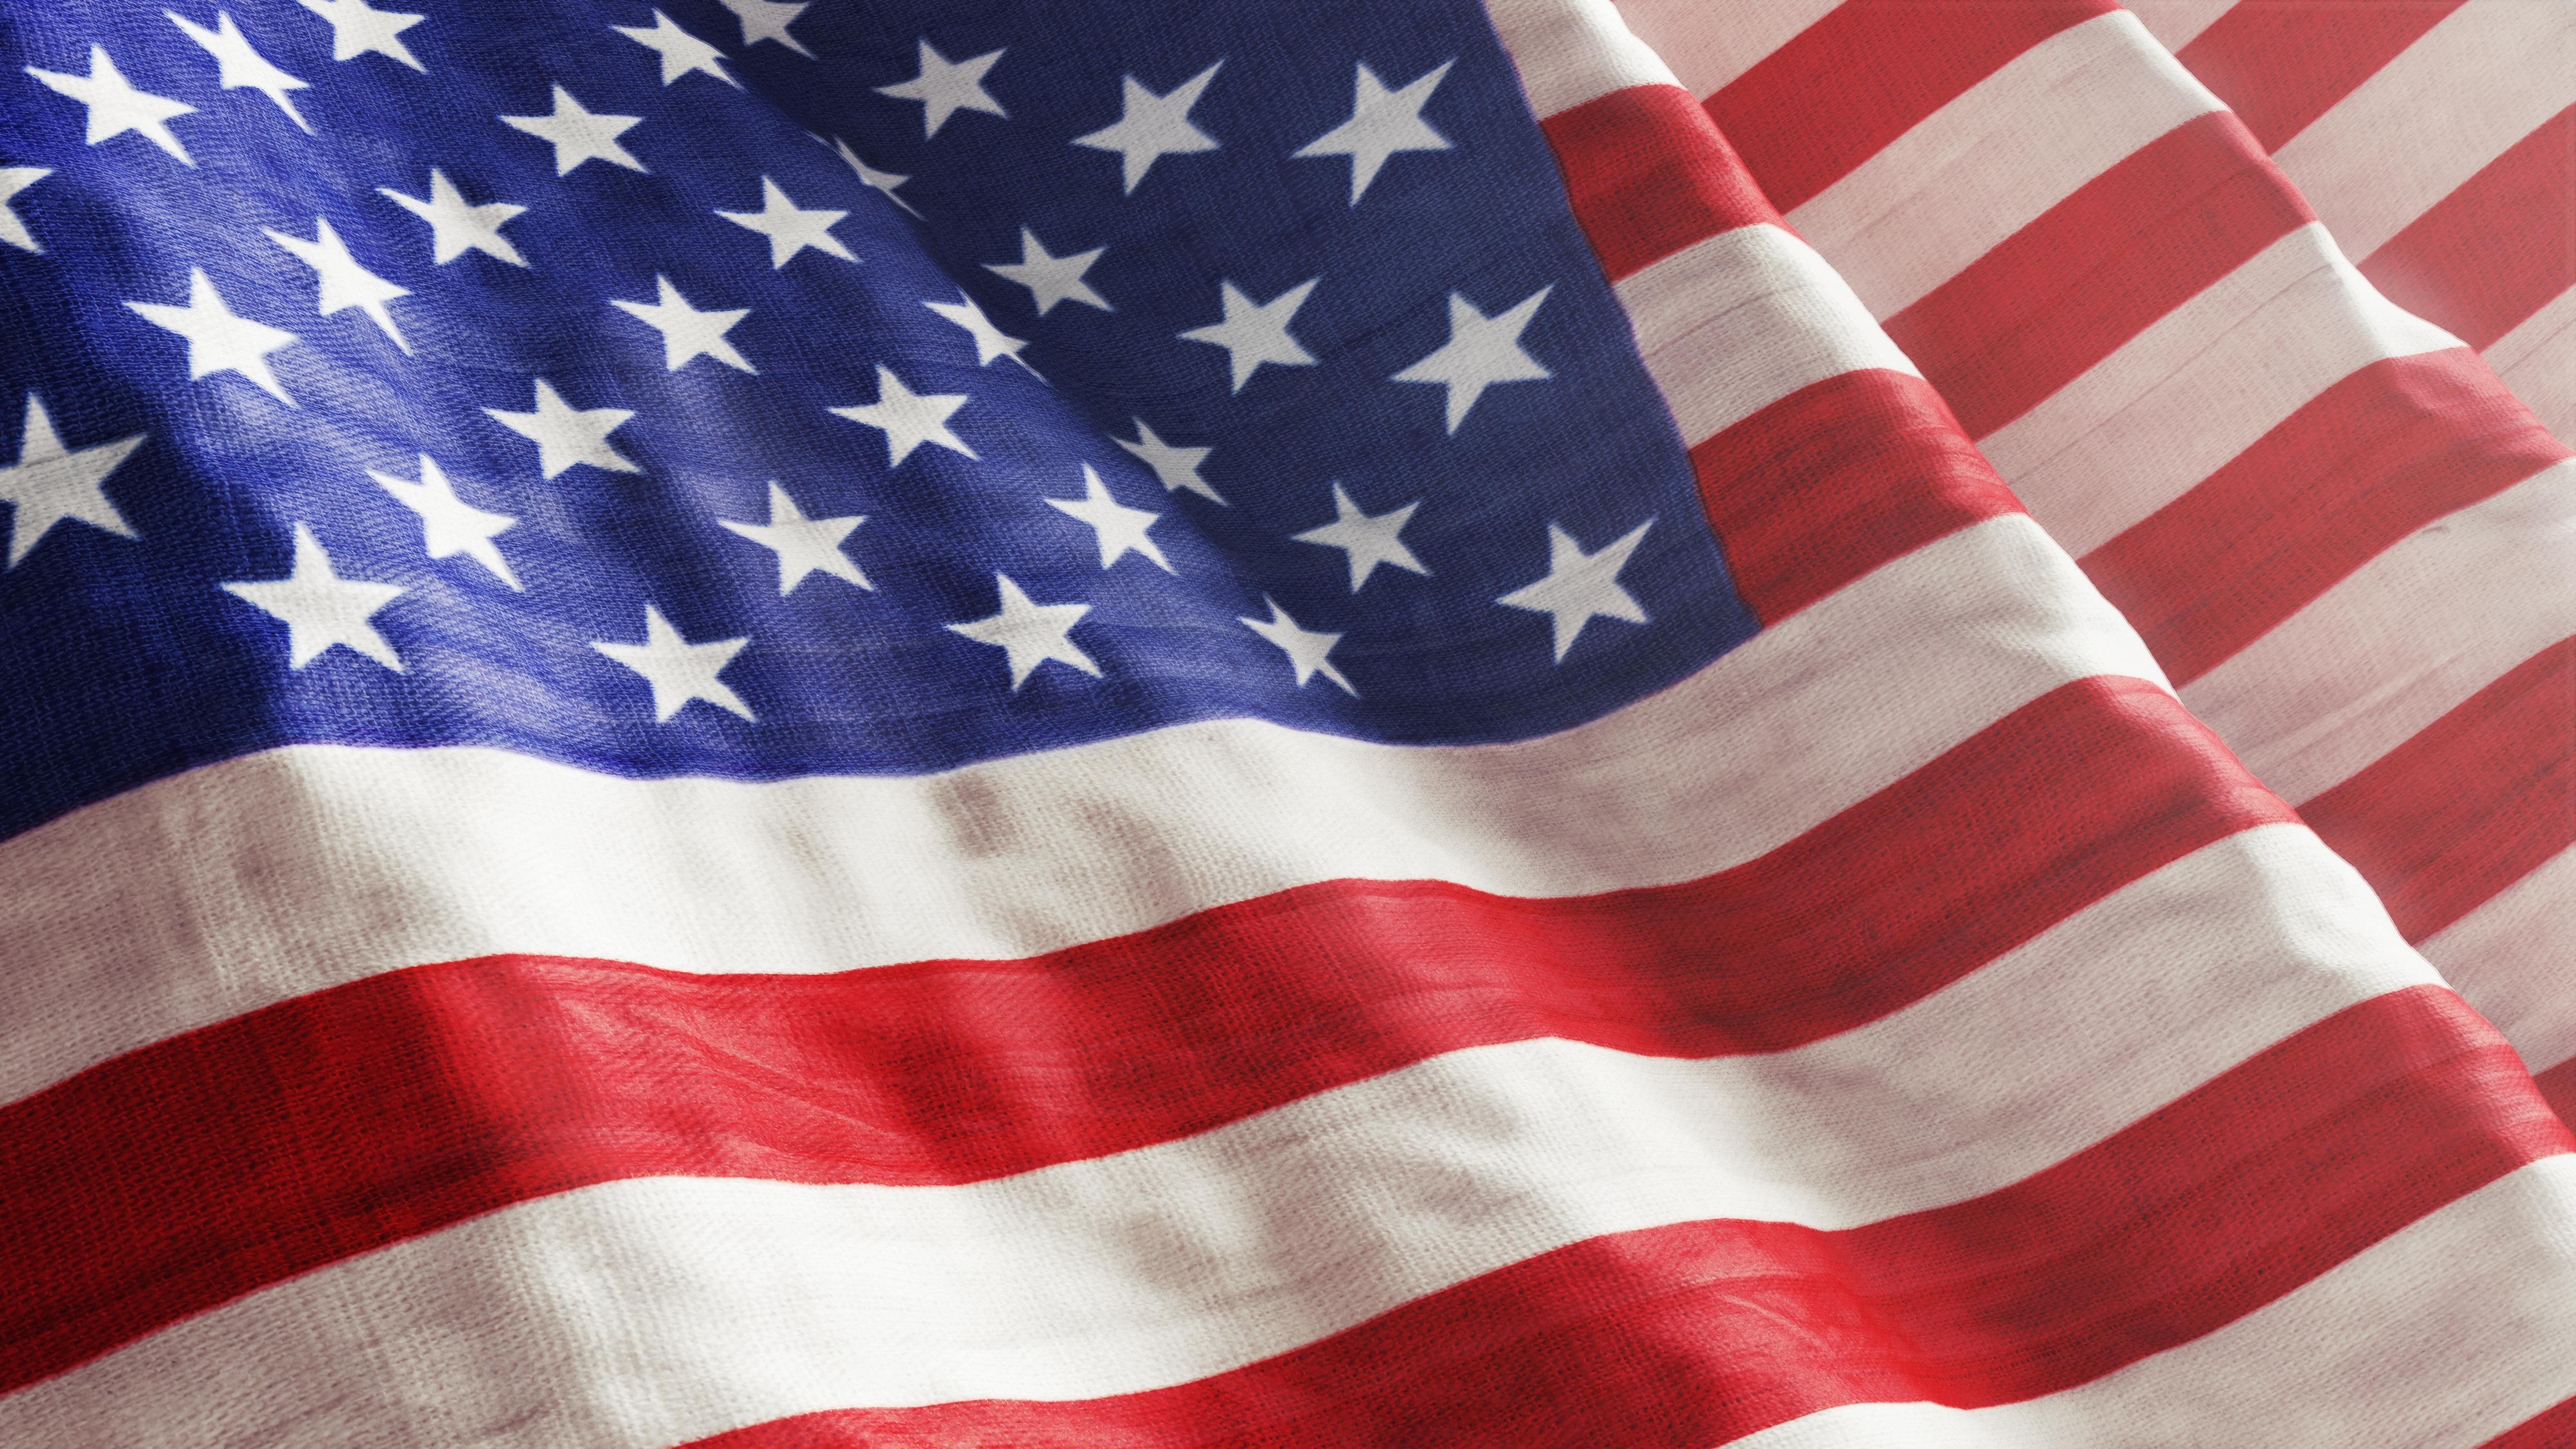 Renewing the Spirit of America through Patriot Week